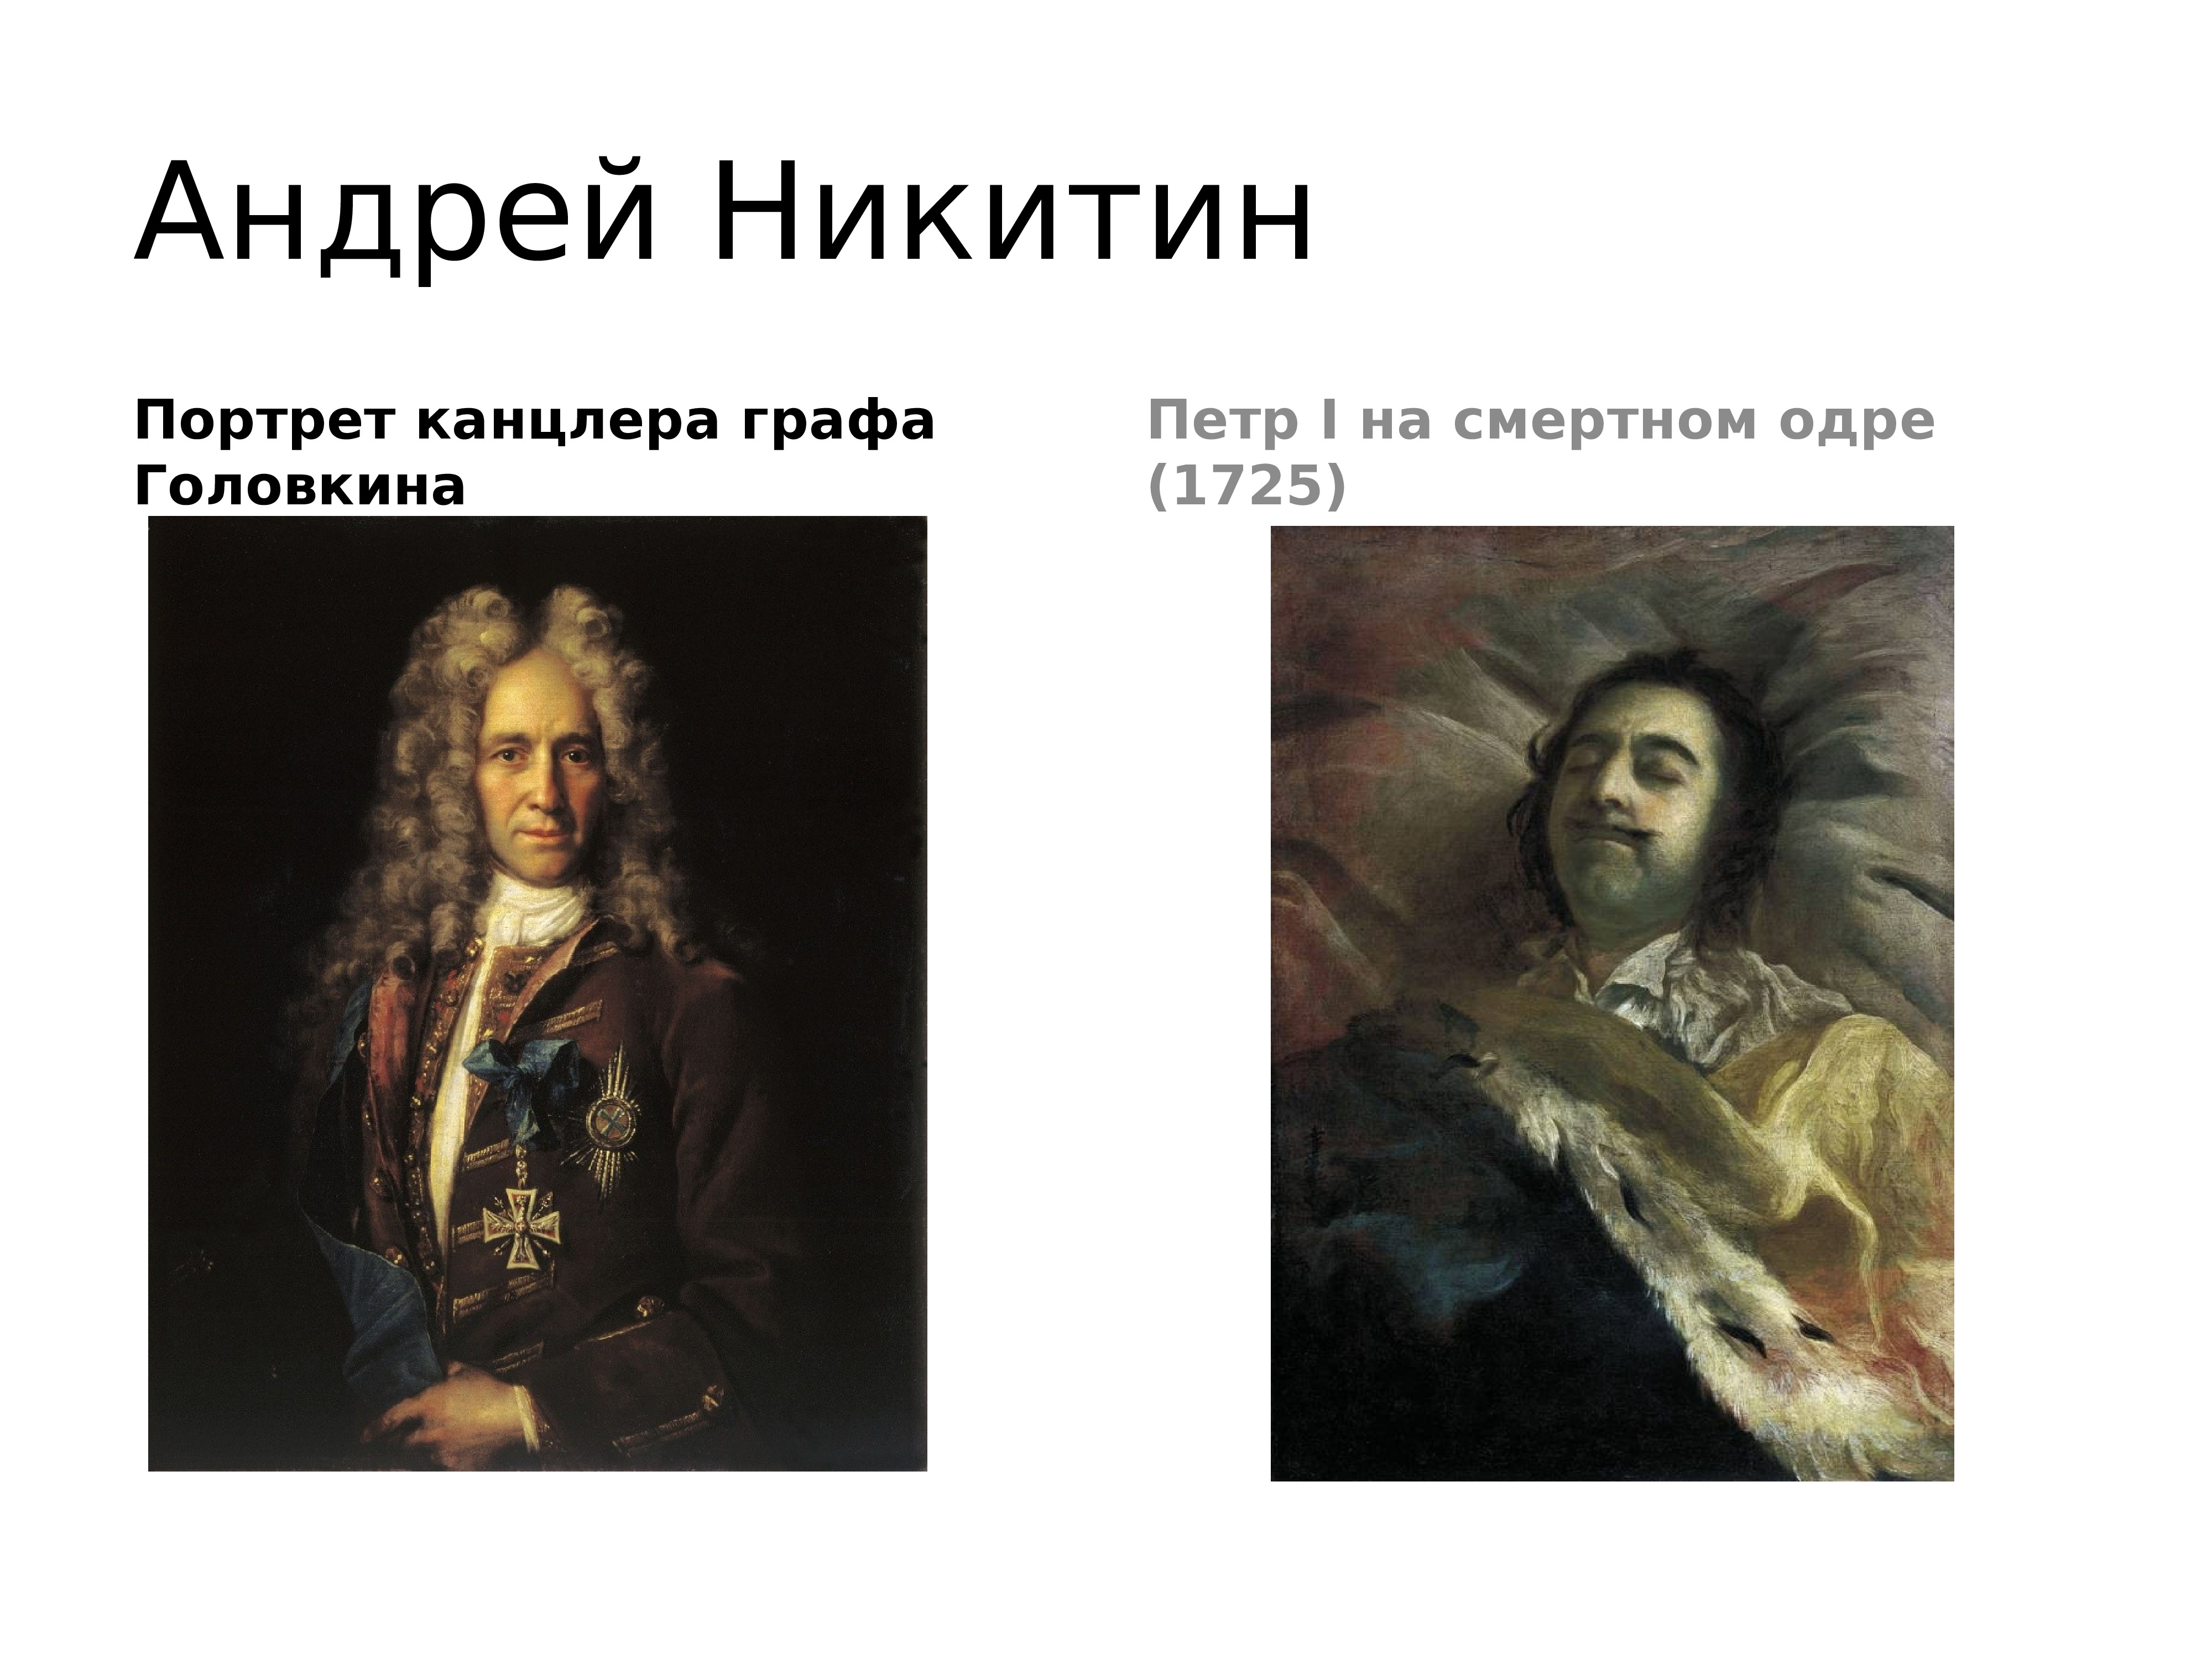 Иван Никитин. Портрет канцлера Головкина, 1720